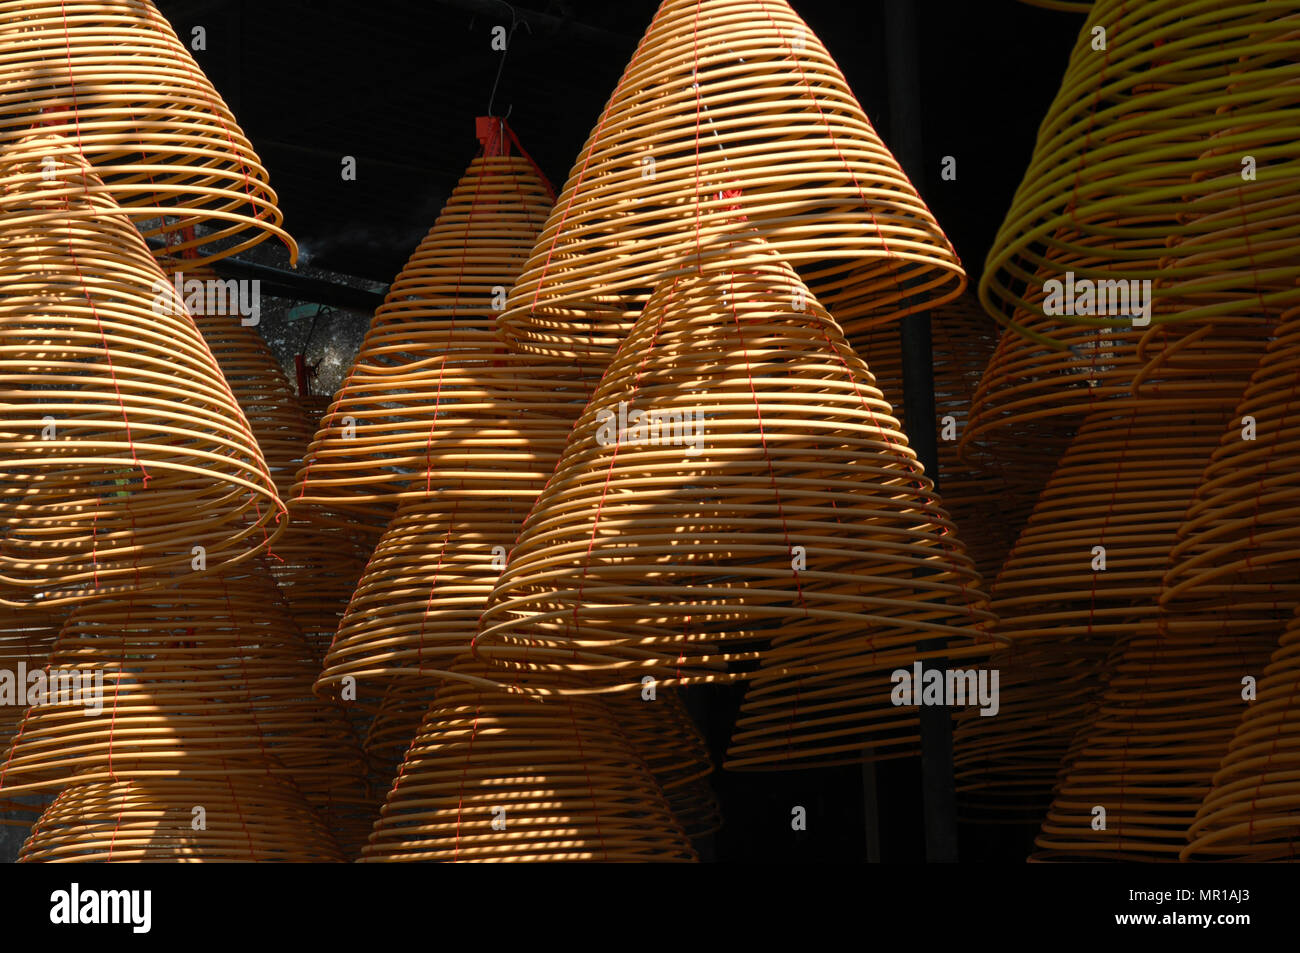 Palos de incienso rizado colgando en el Templo A-MA, Macao. Foto de stock